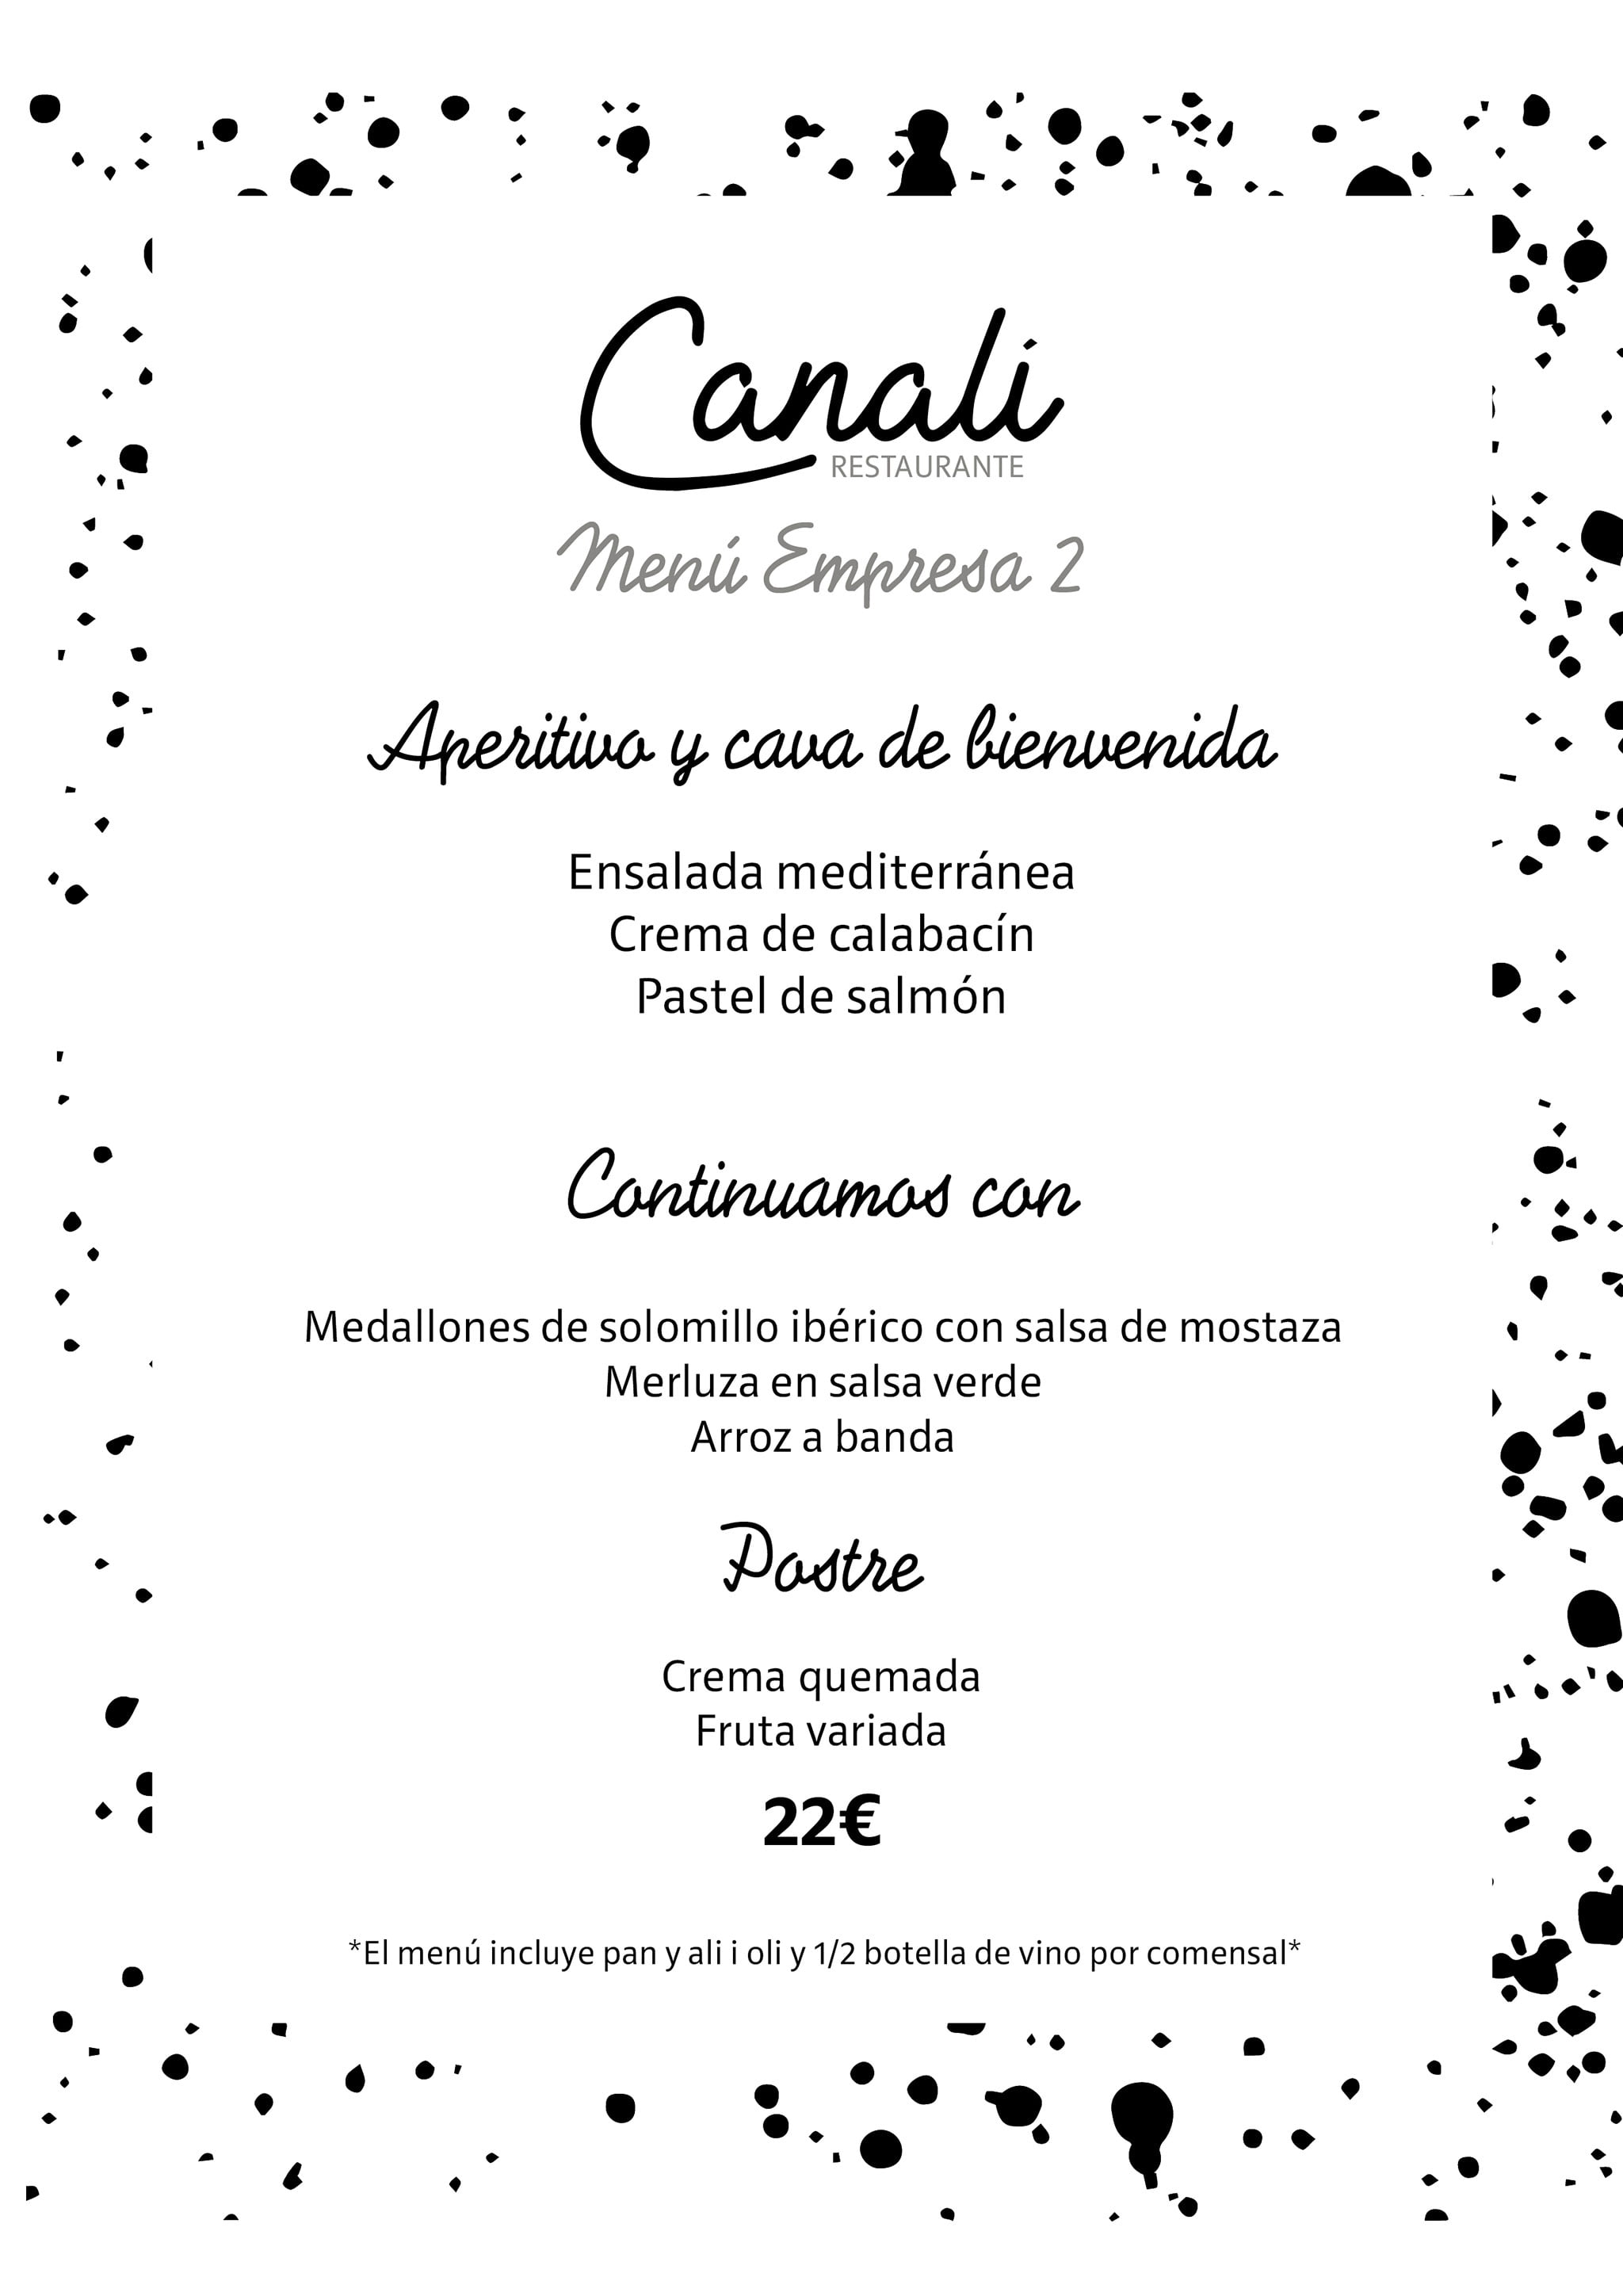 Menú de empresa 2 – Restaurante Canali